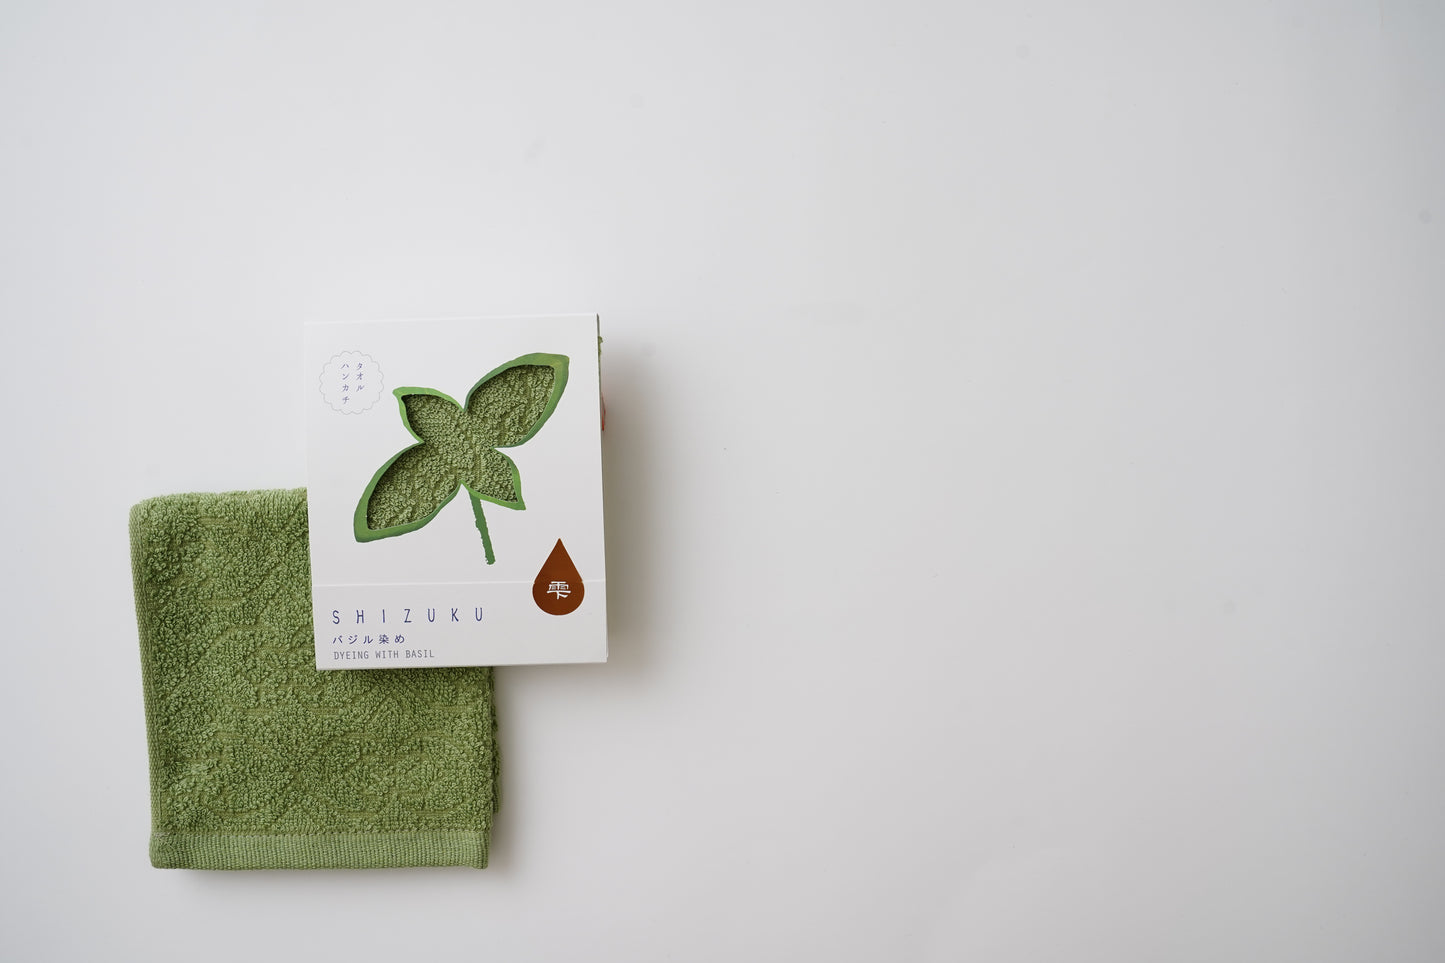 thies 1856 ® x Fukuroya Shizuku Handkerchief Pocket Towel natural dyed basil green